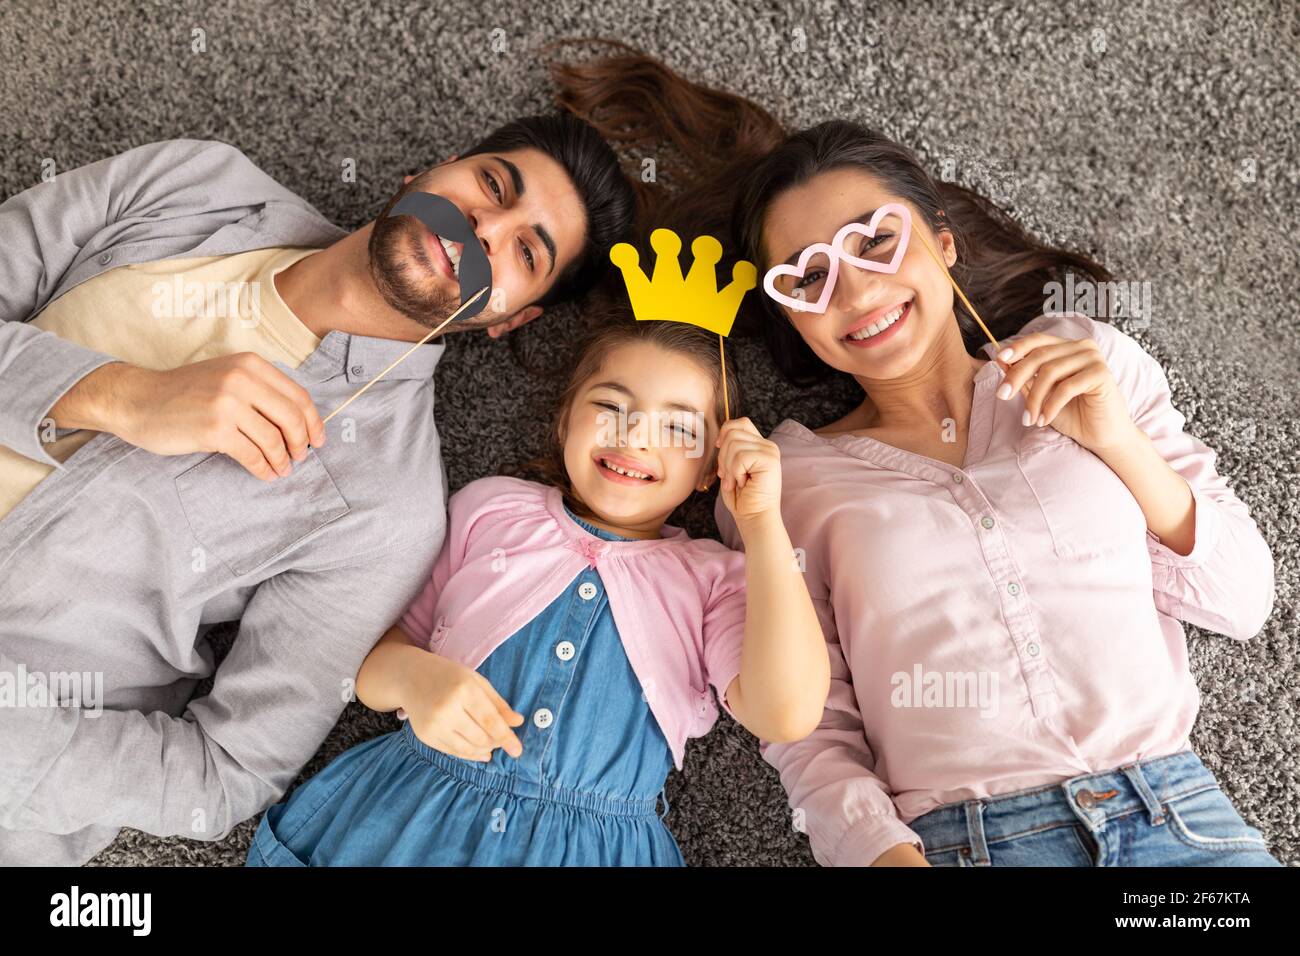 Drôle de père arabe, mère et fille s'amuser avec couronne, lunettes et moustache sur des bâtons, allongé sur la moquette, vue de dessus Banque D'Images